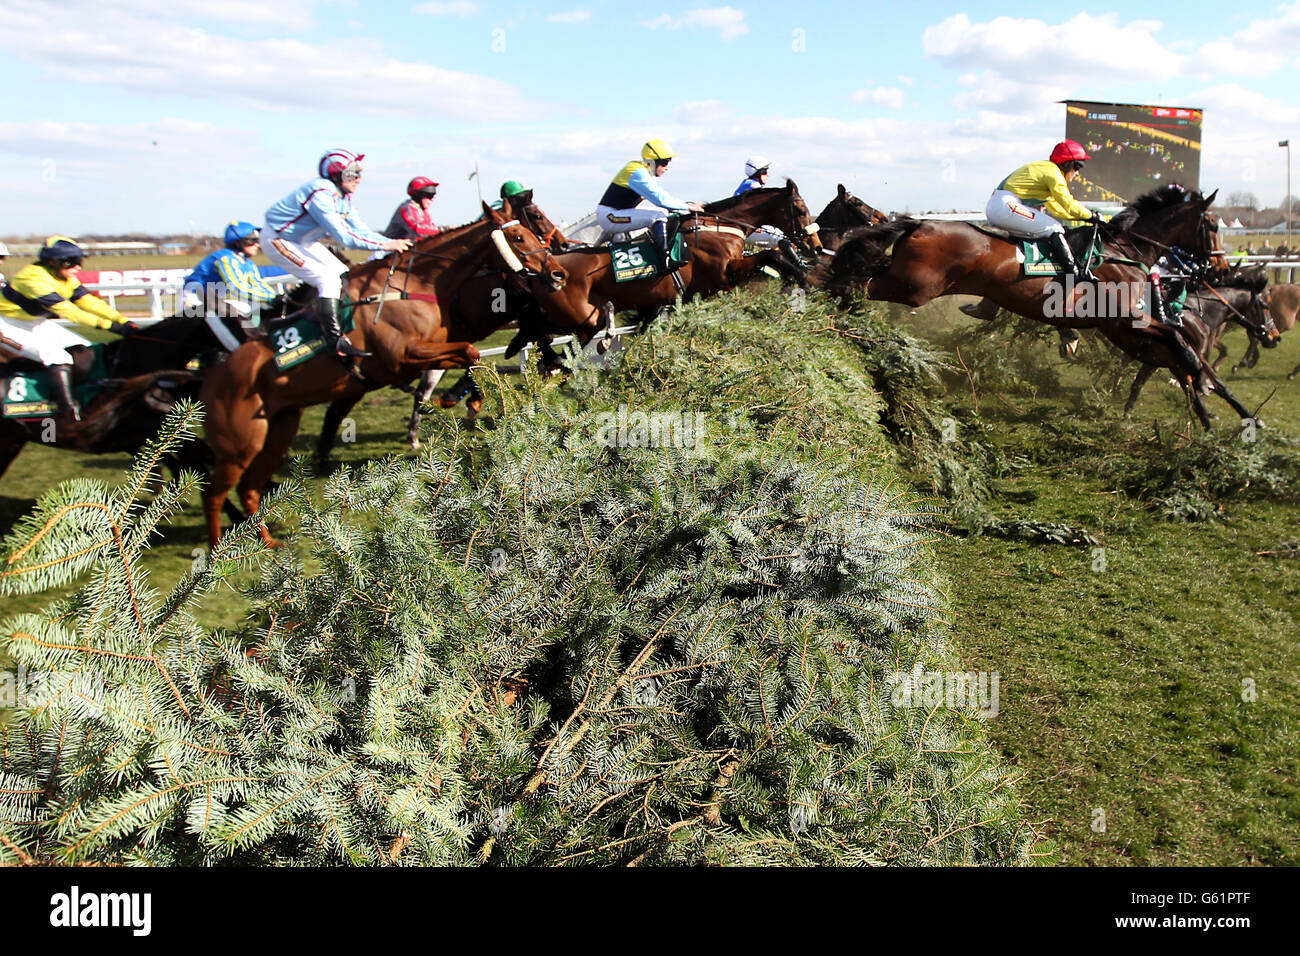 Corse di cavalli - Il 2013 John Smith il Grand National - Giorno di inaugurazione - L'Aintree Racecourse Foto Stock